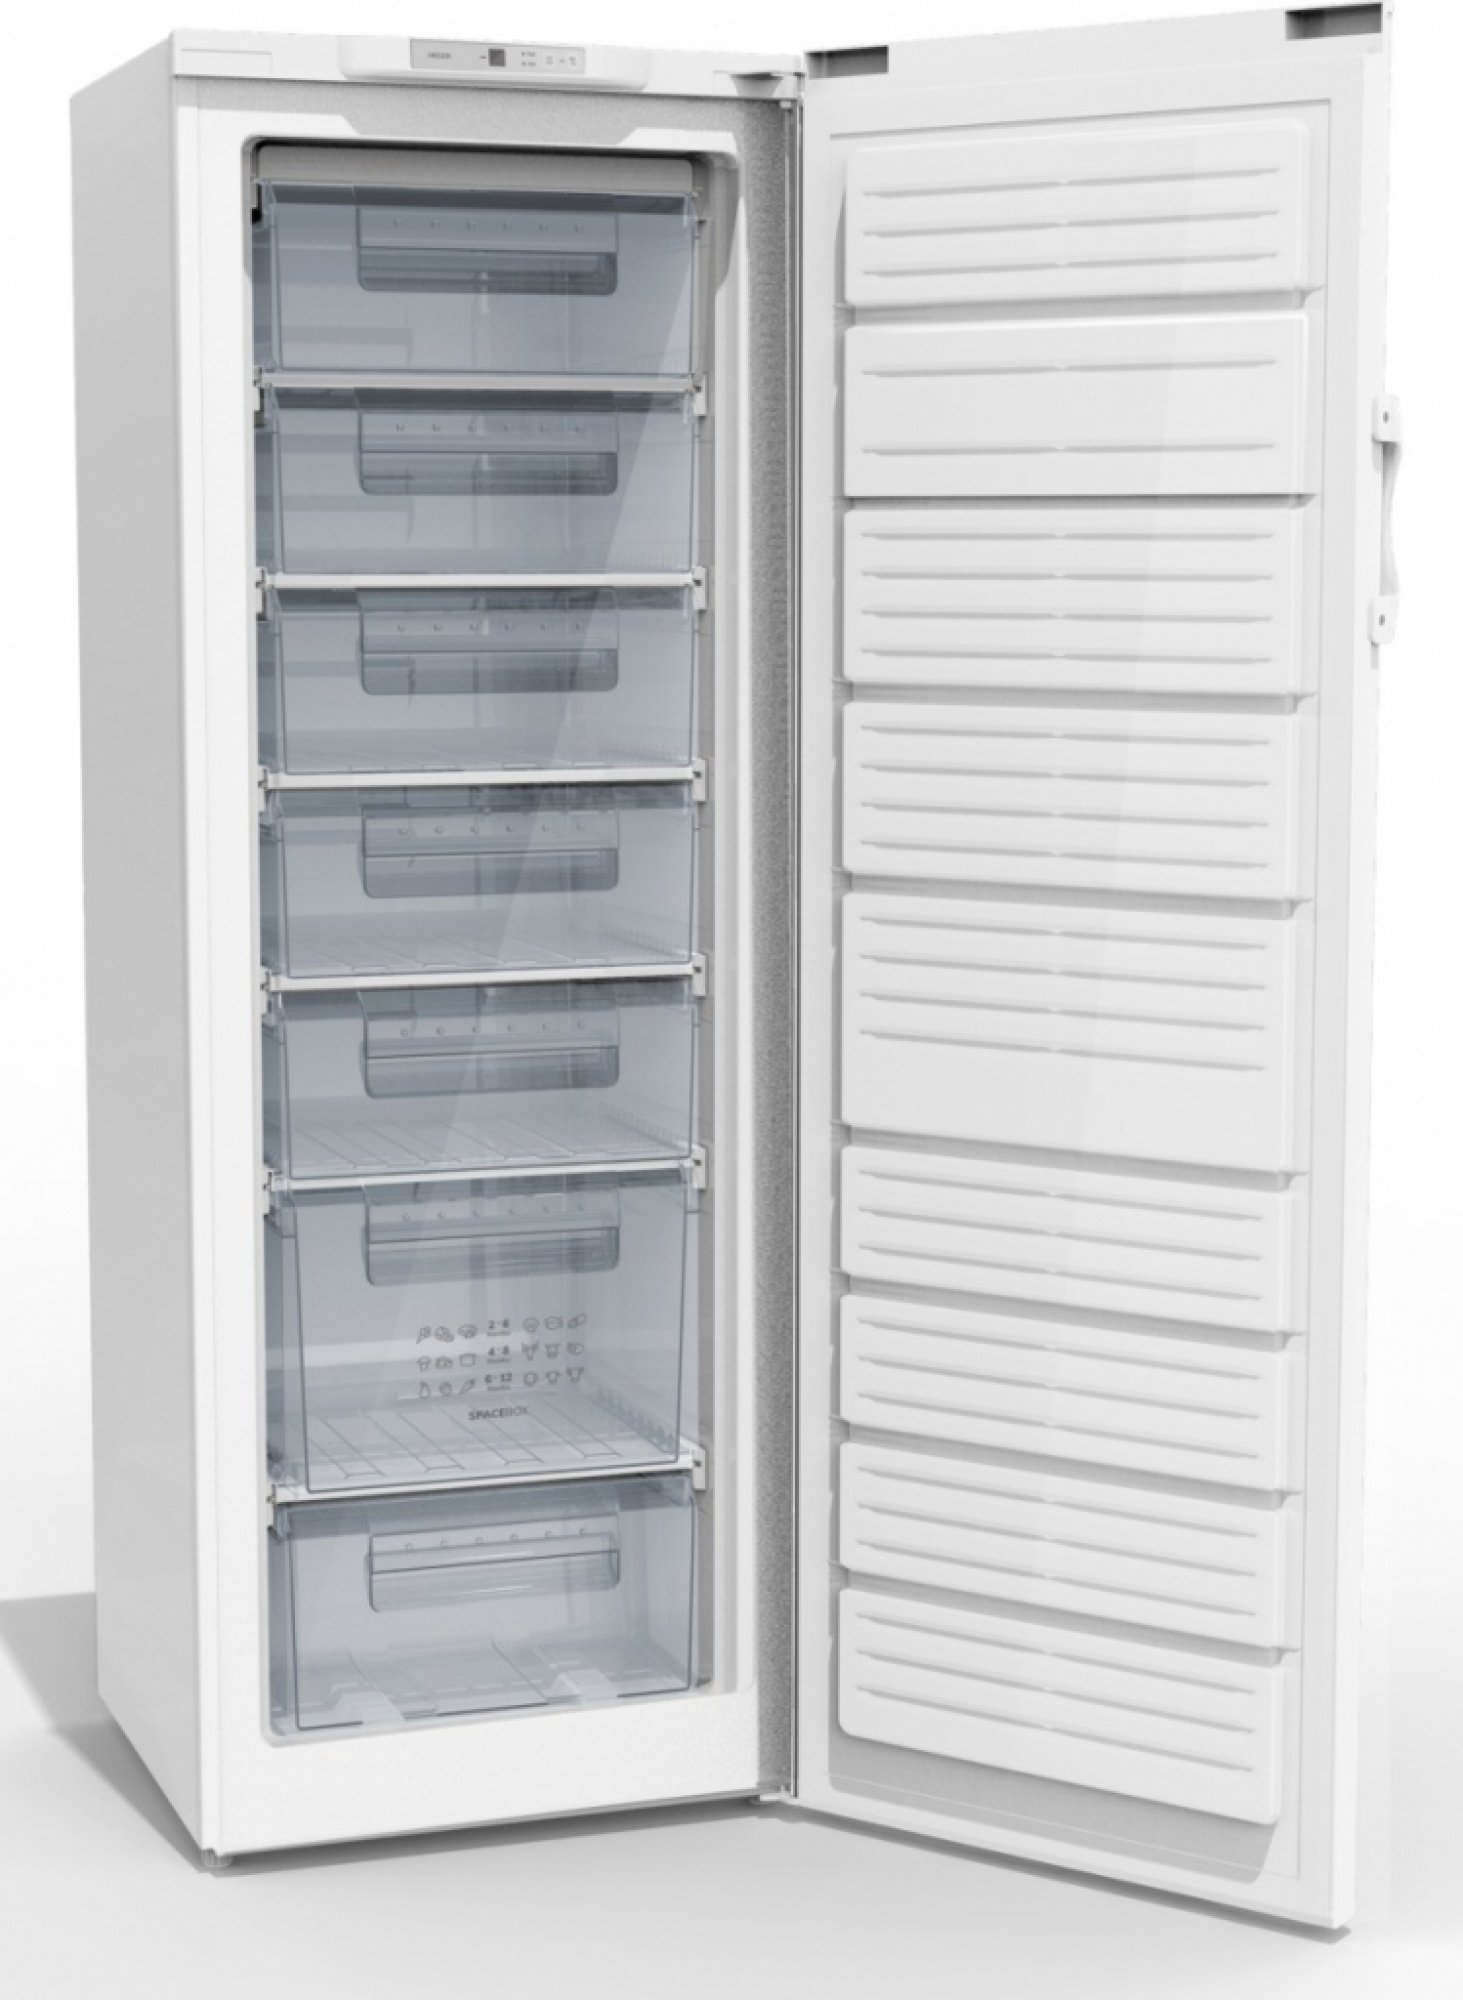 Aká je ideálna teplota v chladničke a mrazničke pre uchovávanie potravín?